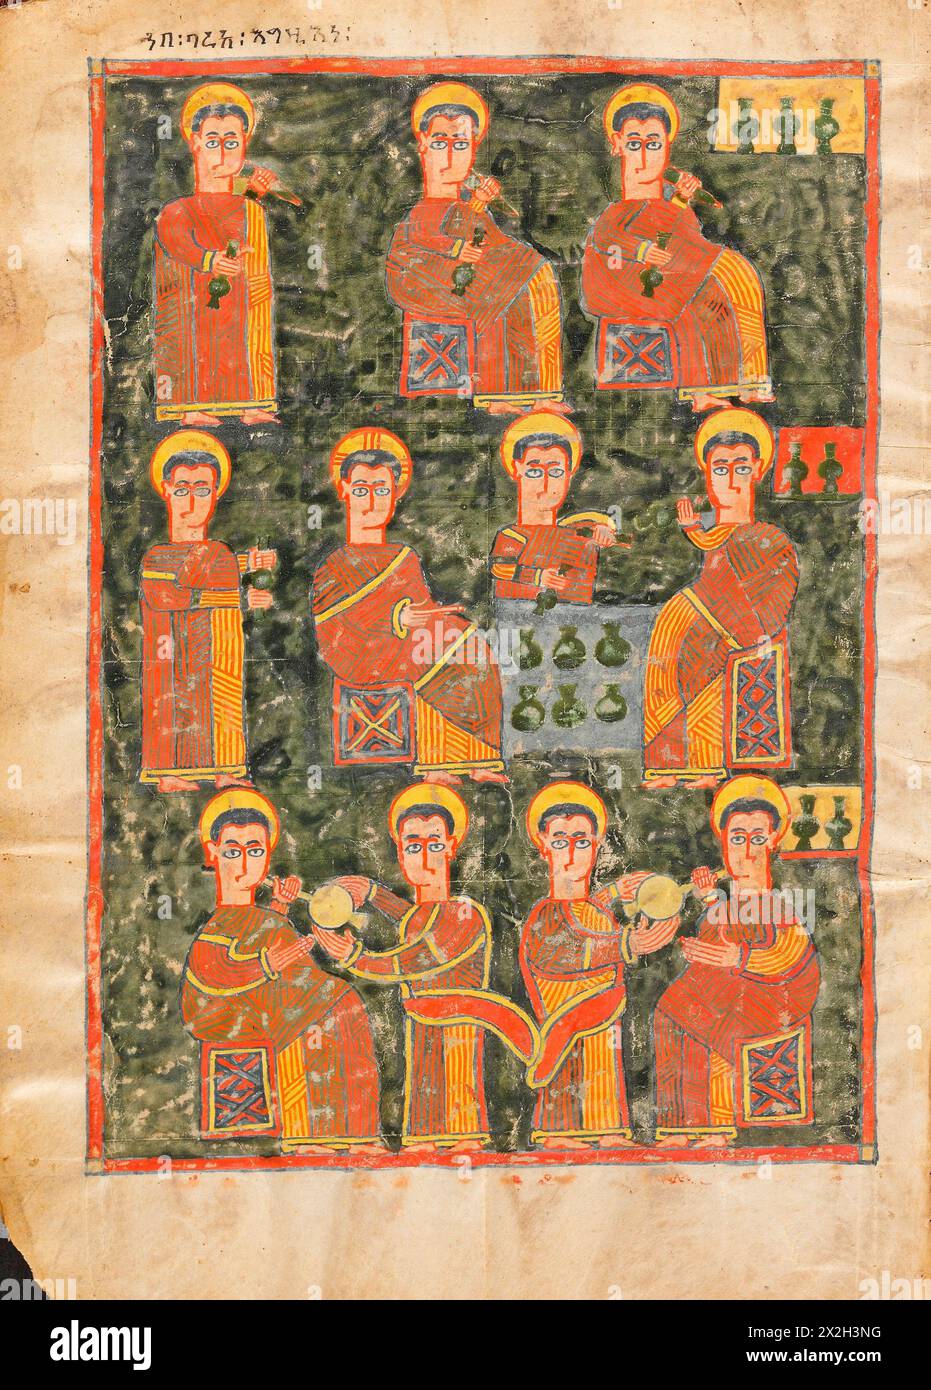 Vangelo illuminato - popoli Amhara - il miracolo al matrimonio a Cana - fine XIV-inizio XV secolo Foto Stock